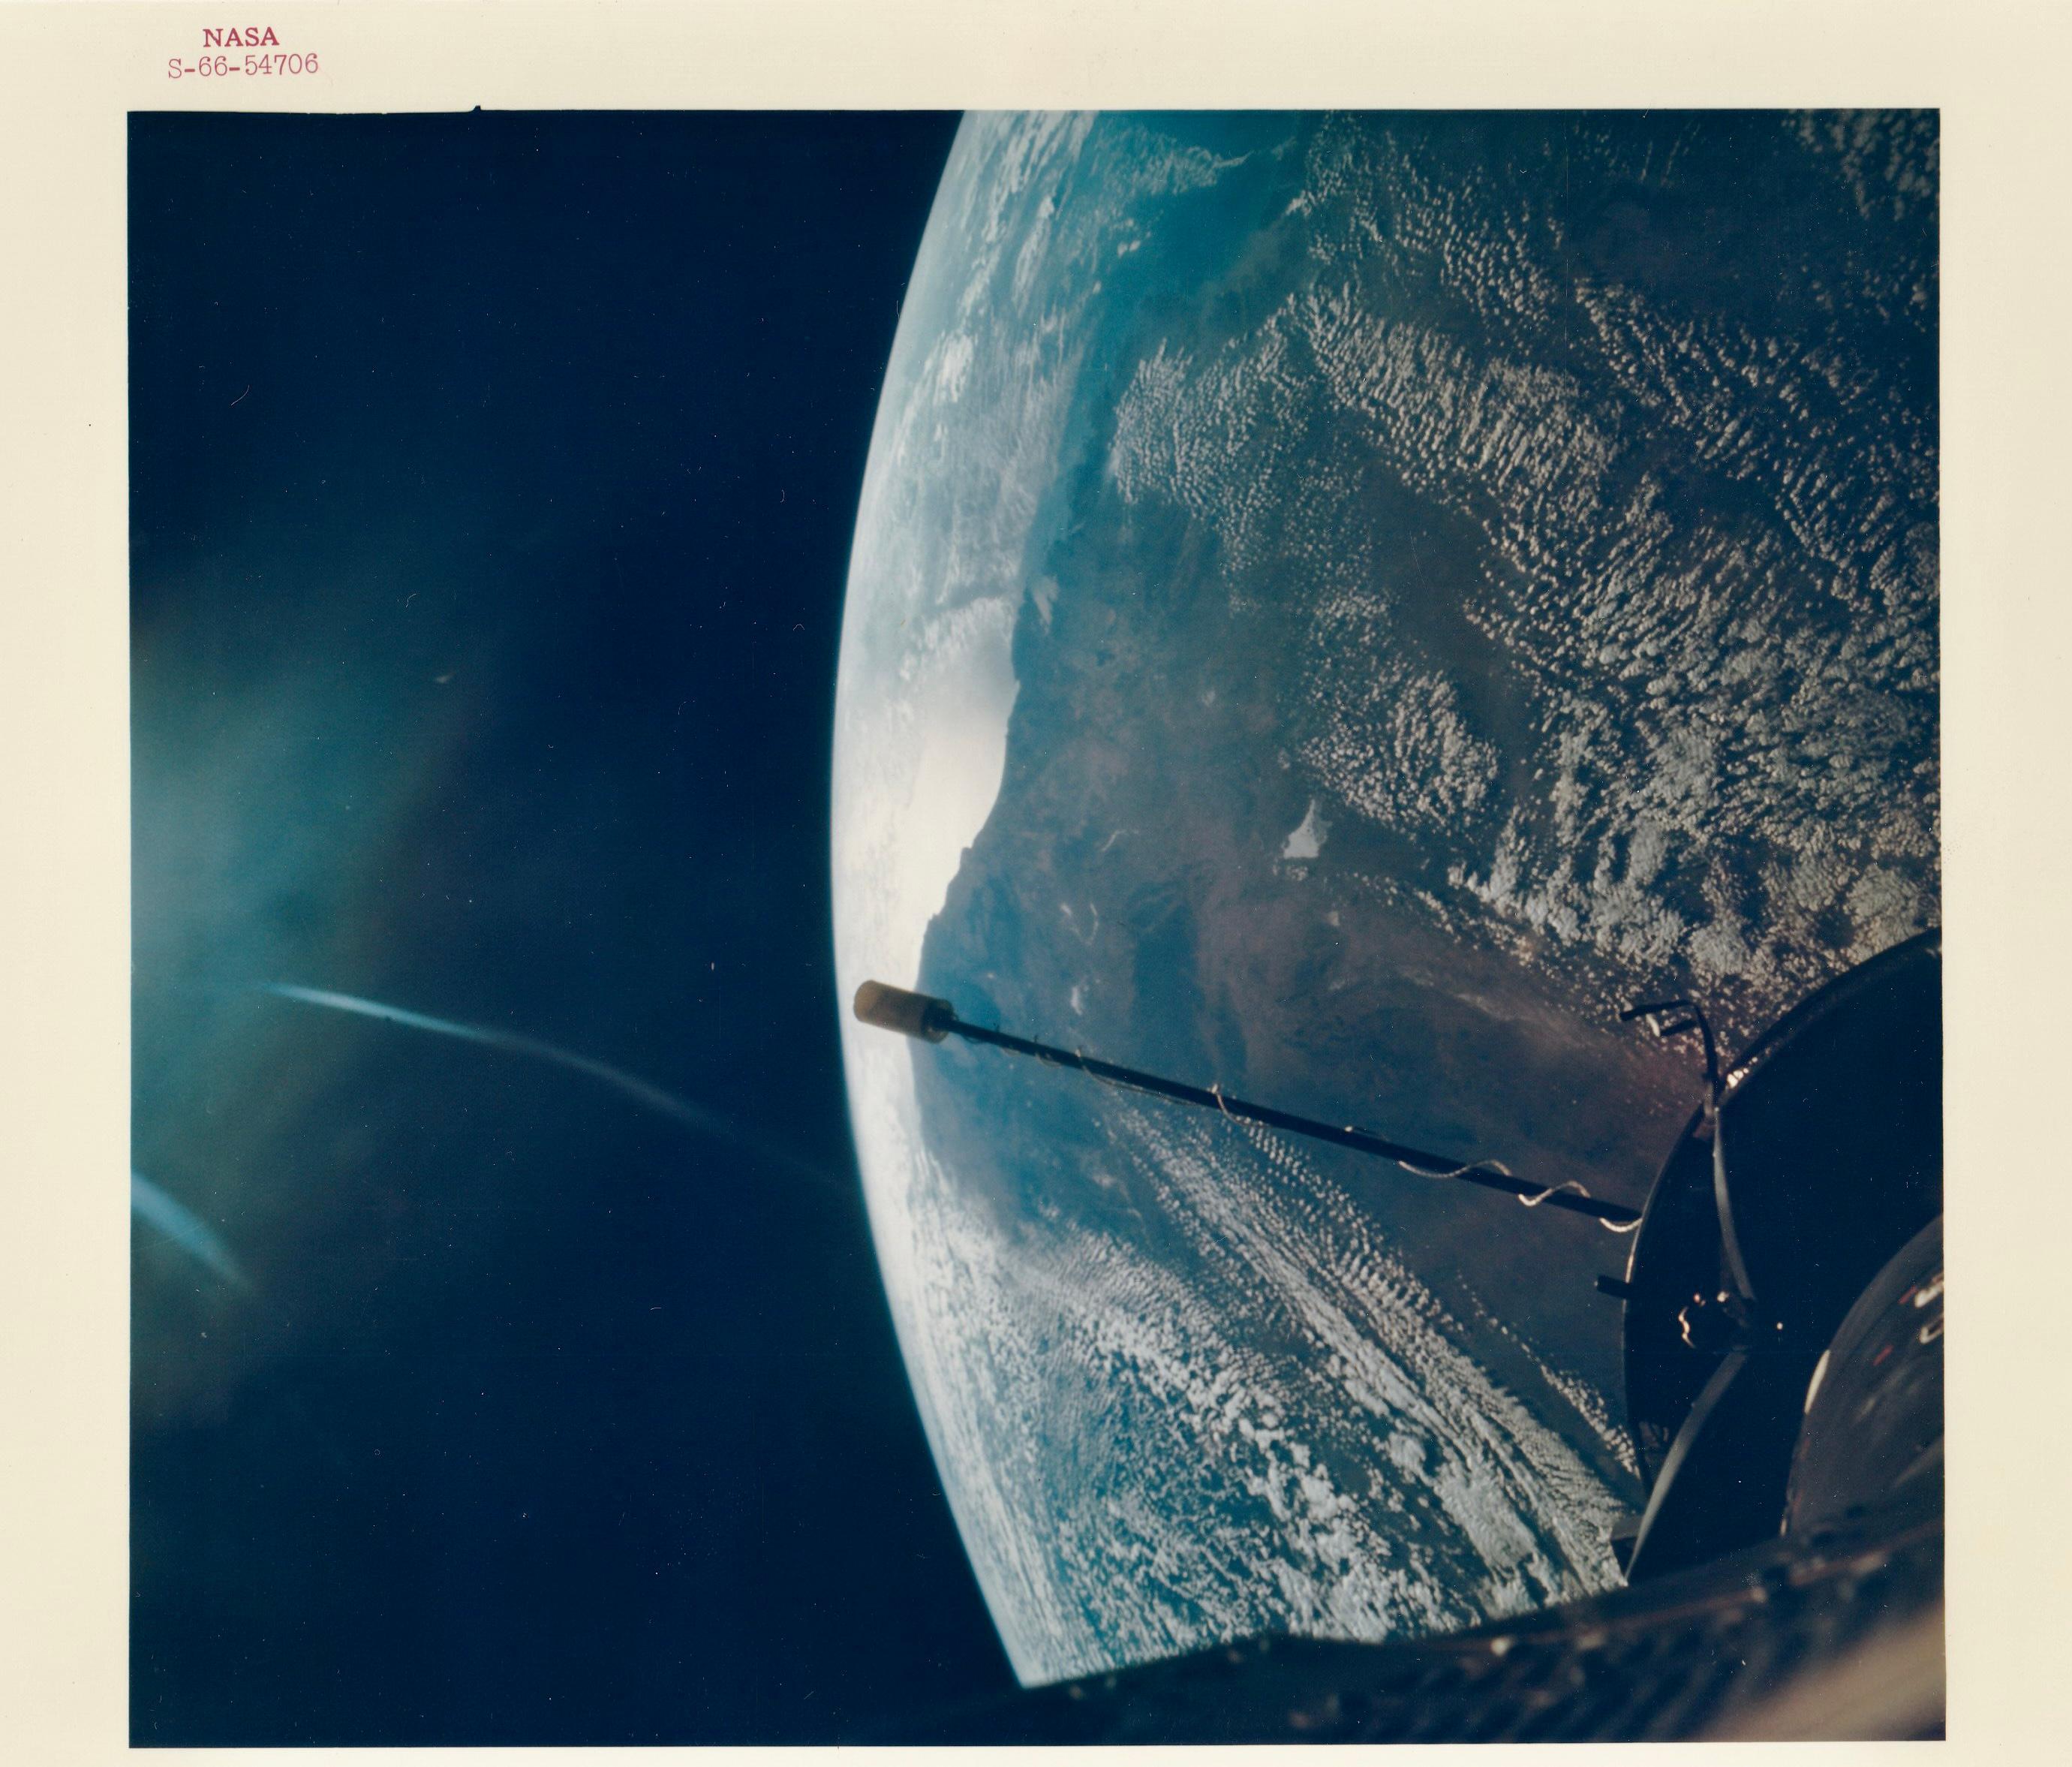 Au cours de la mission Gemini 2 en septembre 1966, la Terre a été enregistrée avec un objectif Hasselblad 70 mm depuis l'espace au point le plus élevé, à 740 miles nautiques. Gemini 2 a documenté la manière dont les vaisseaux spatiaux pouvaient se